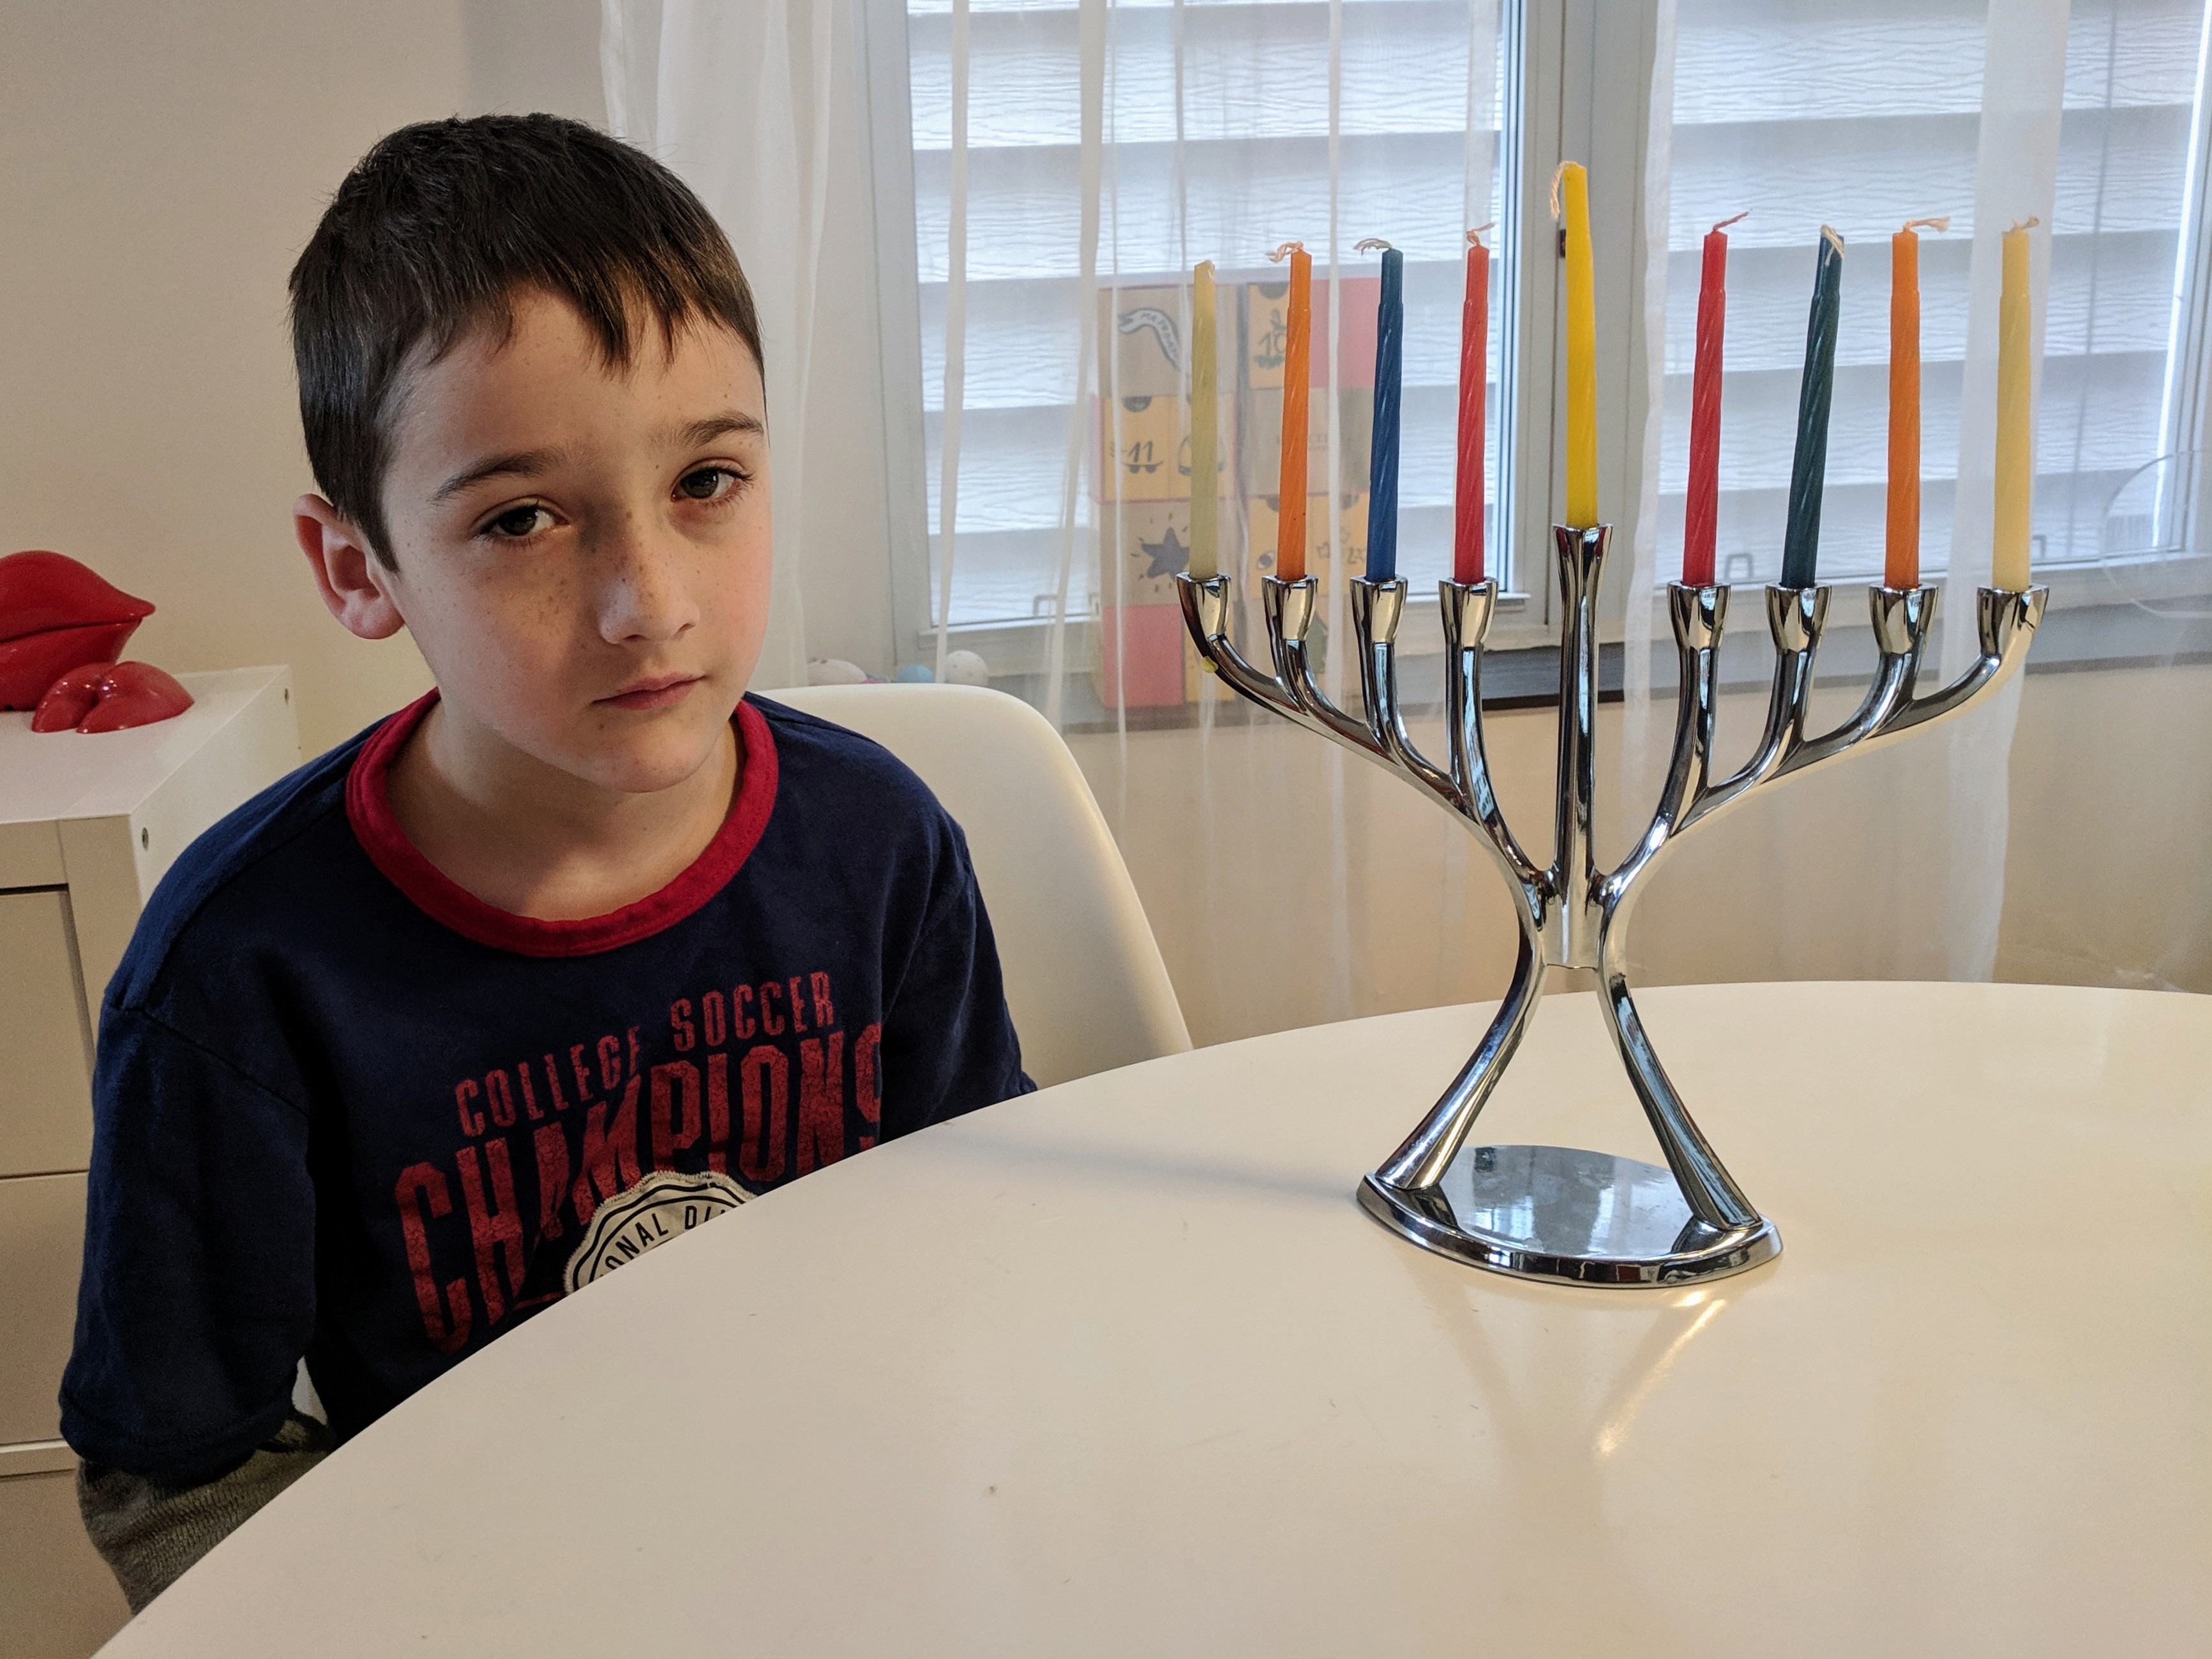 So your kid thinks Hanukah sucks balls